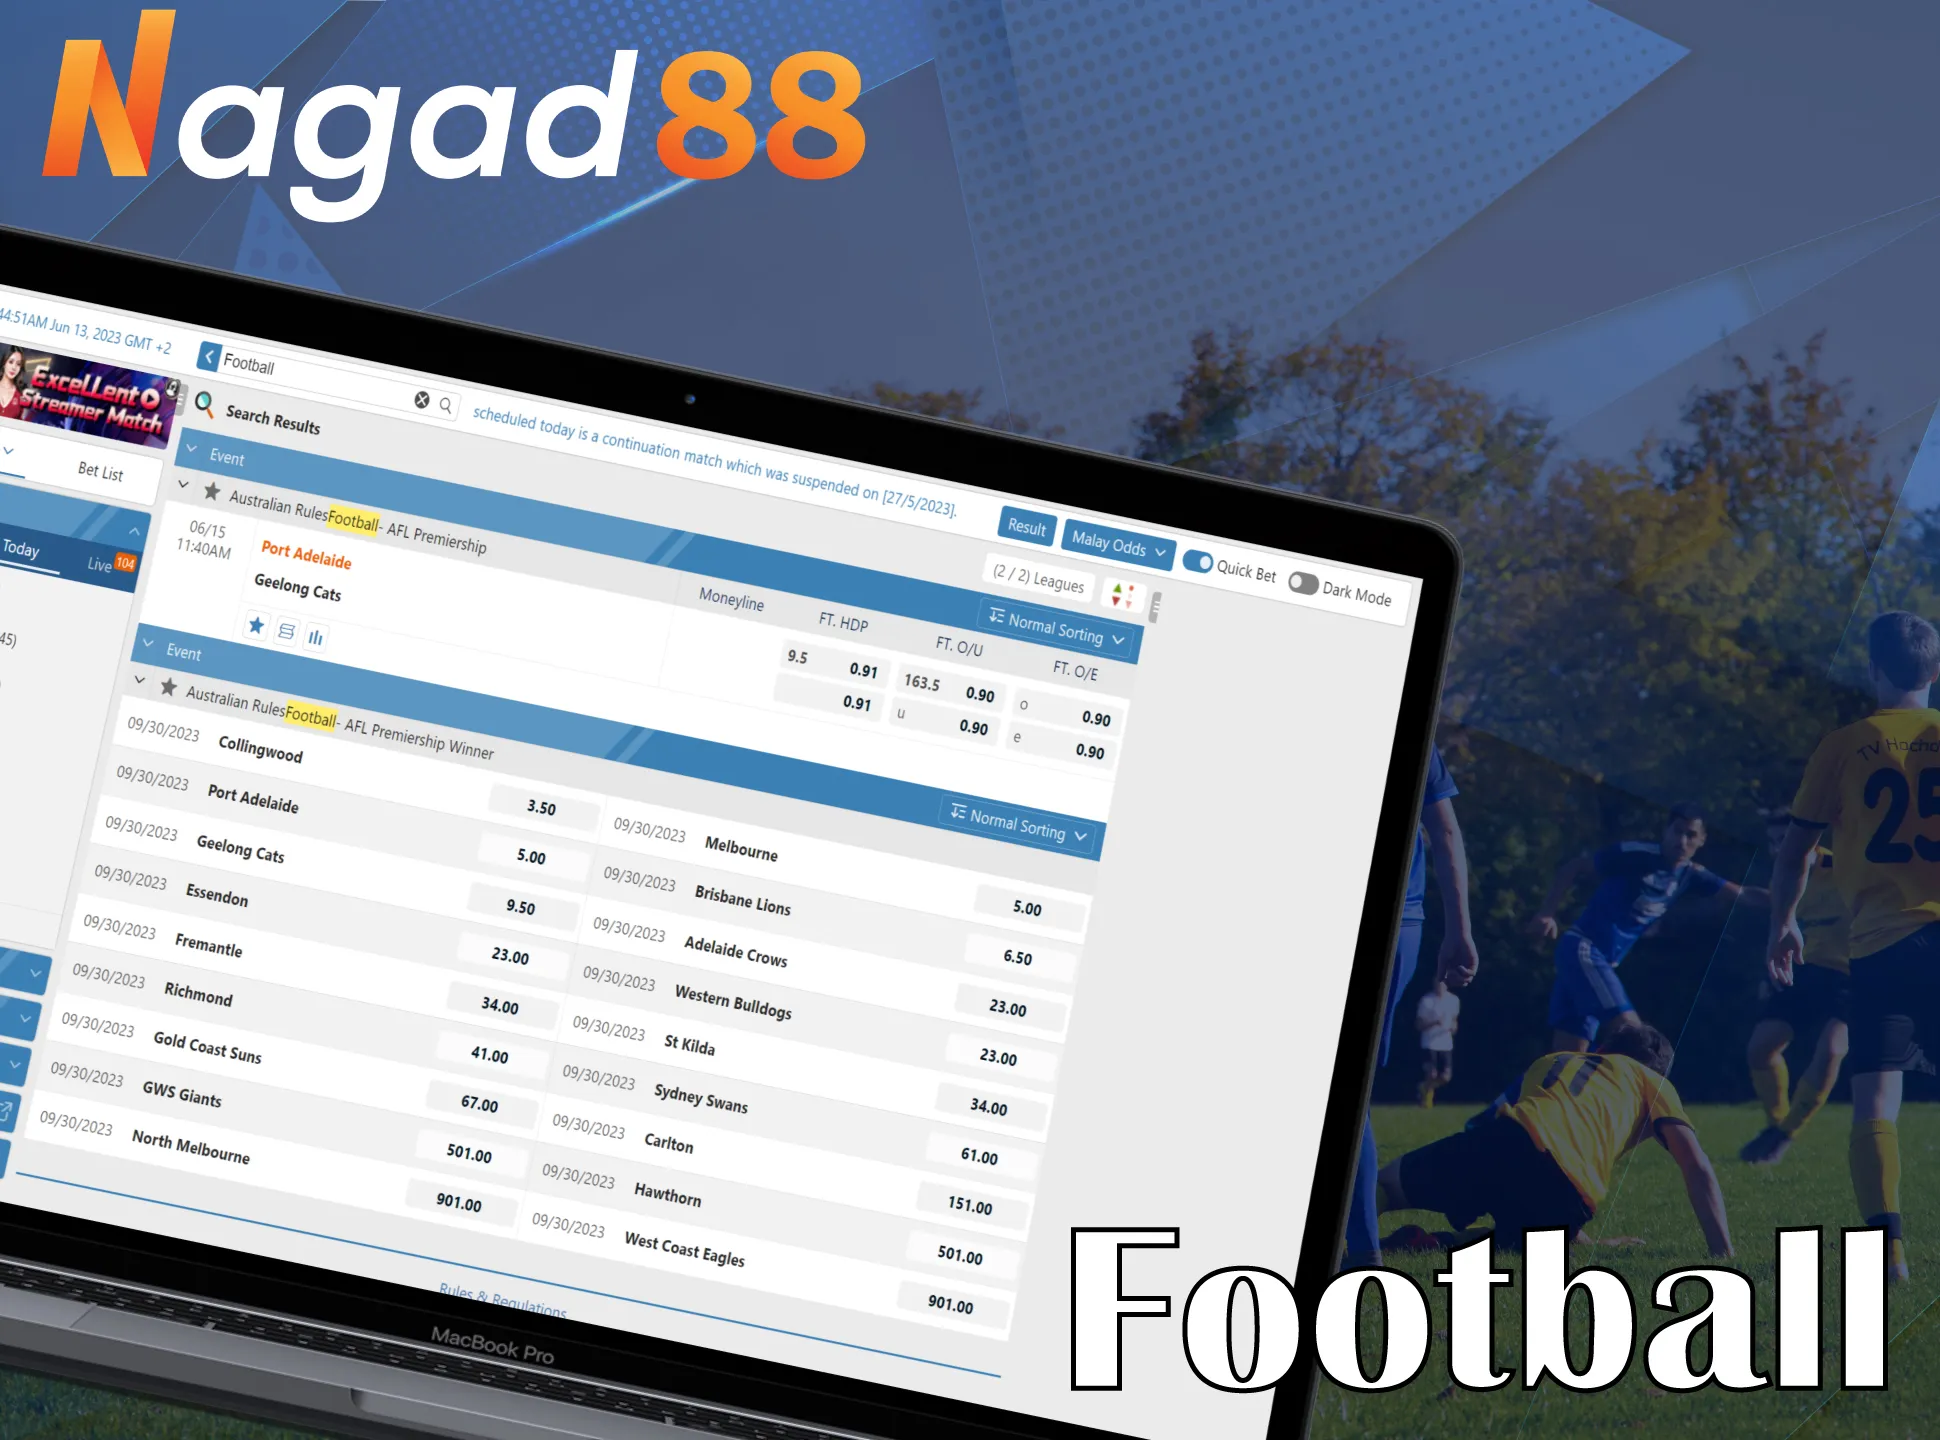 Bet on football at Nagad88.